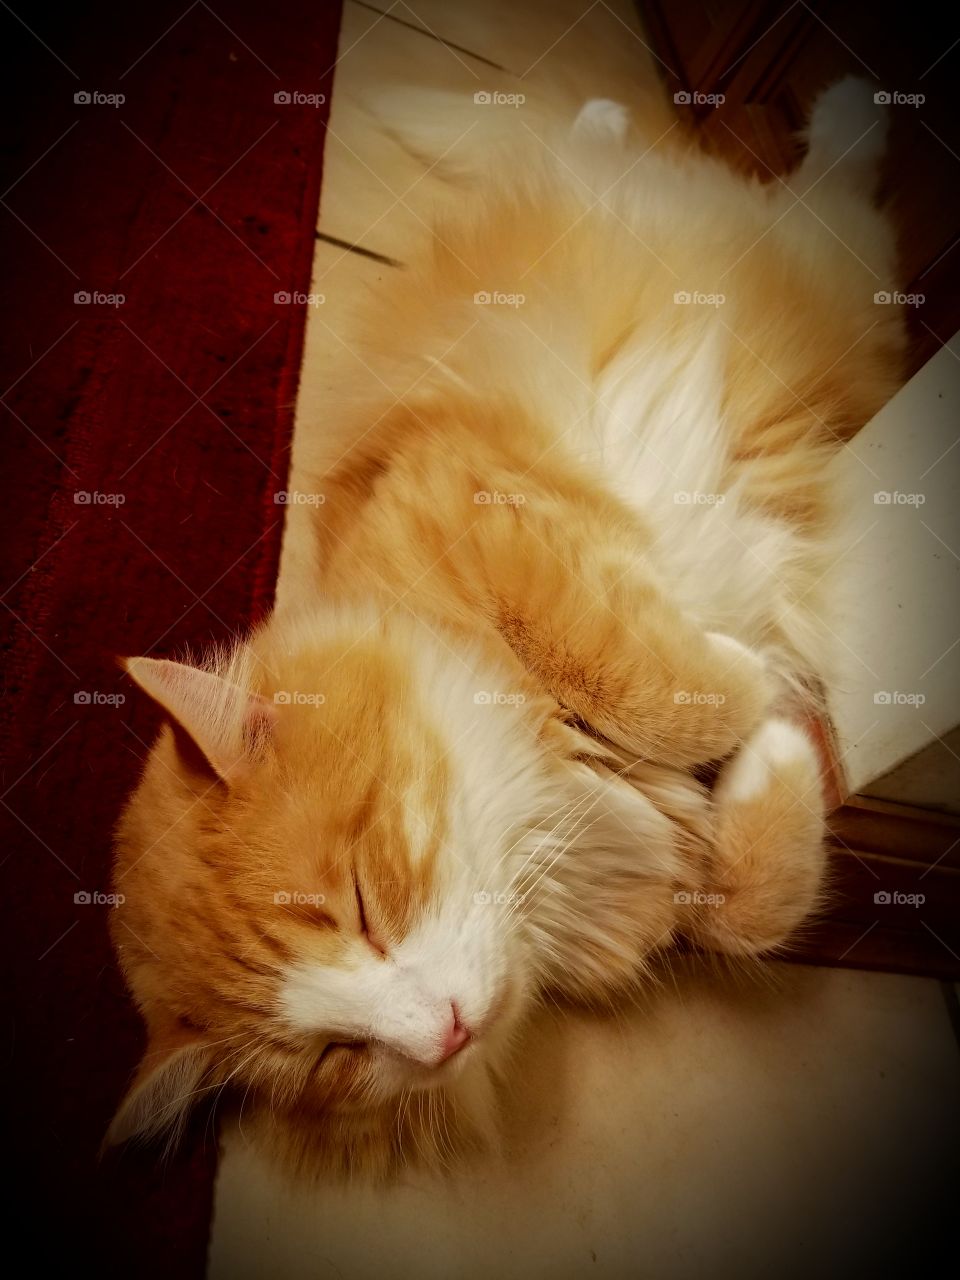 Orange cat sleeping on its back